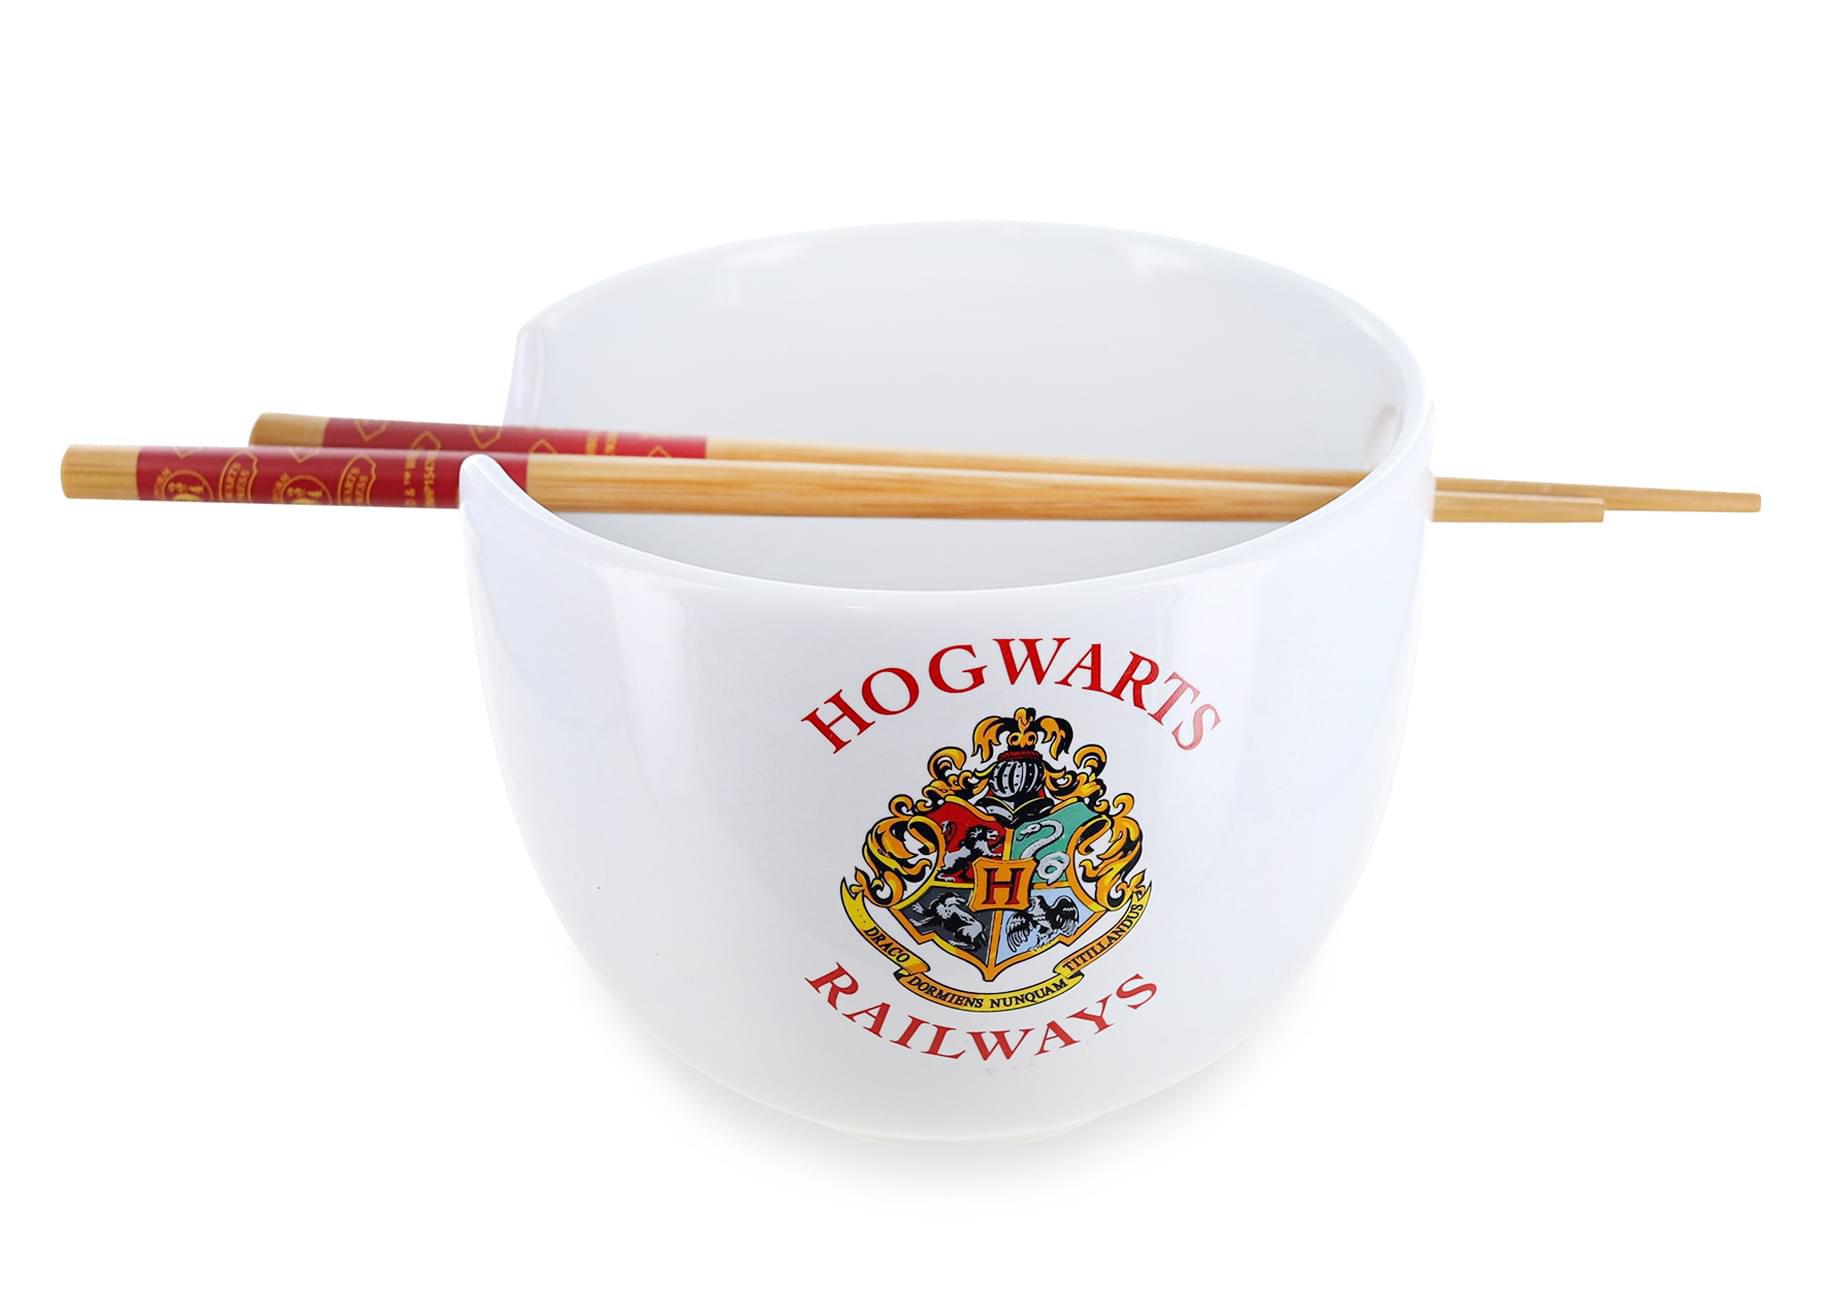 https://assets.wfcdn.com/im/39338770/compr-r85/2166/216684052/20-oz-harry-potter-hogwarts-ramen-bowl.jpg